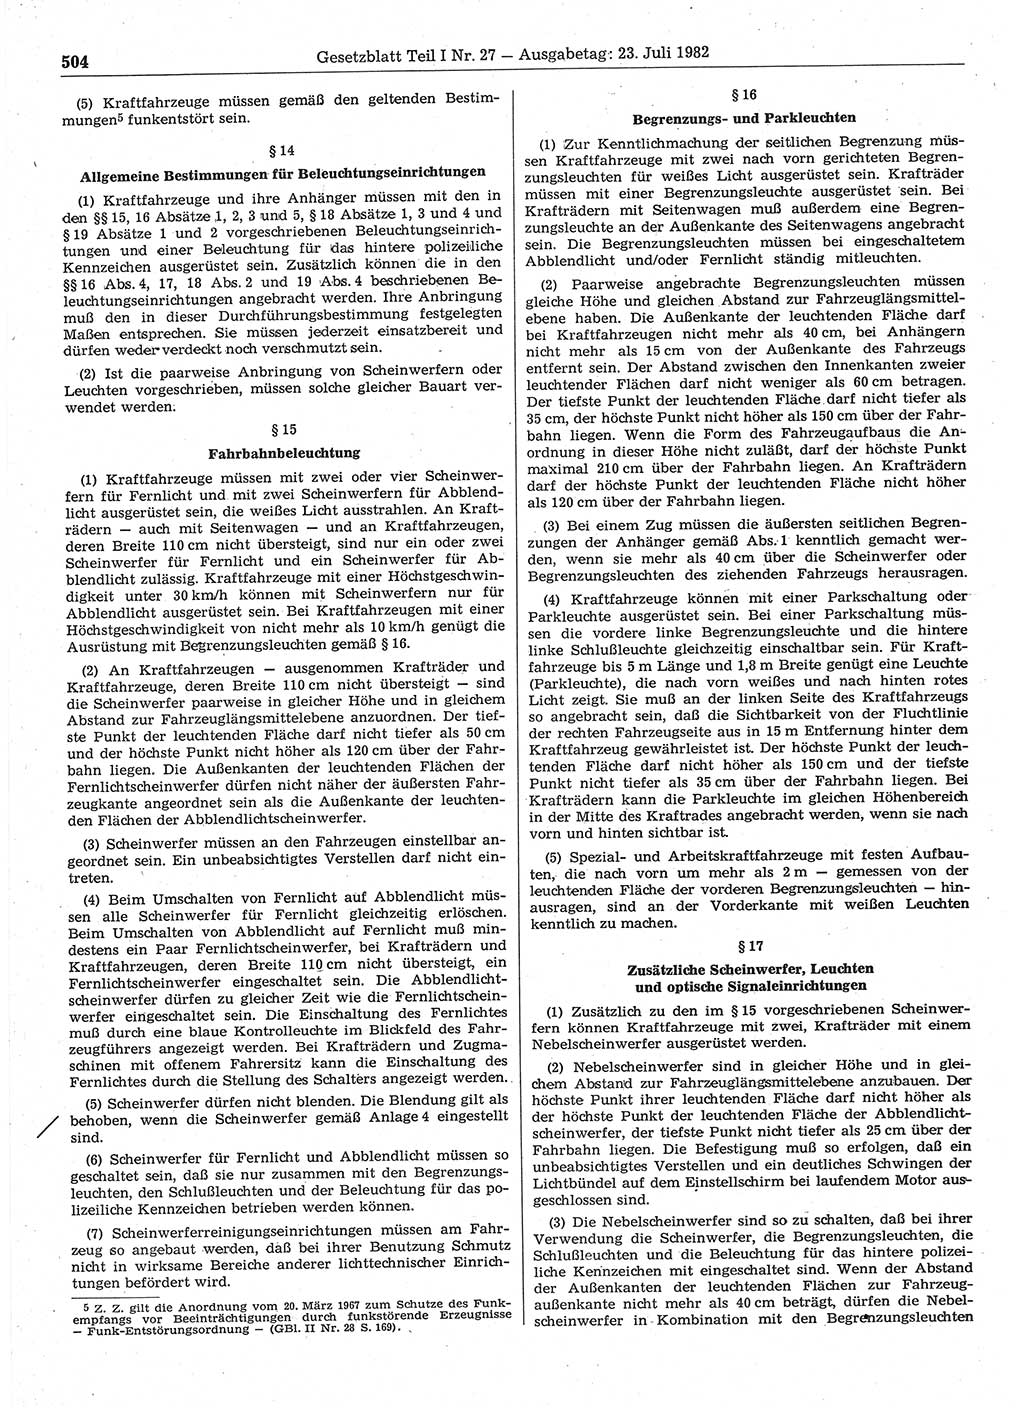 Gesetzblatt (GBl.) der Deutschen Demokratischen Republik (DDR) Teil Ⅰ 1982, Seite 504 (GBl. DDR Ⅰ 1982, S. 504)